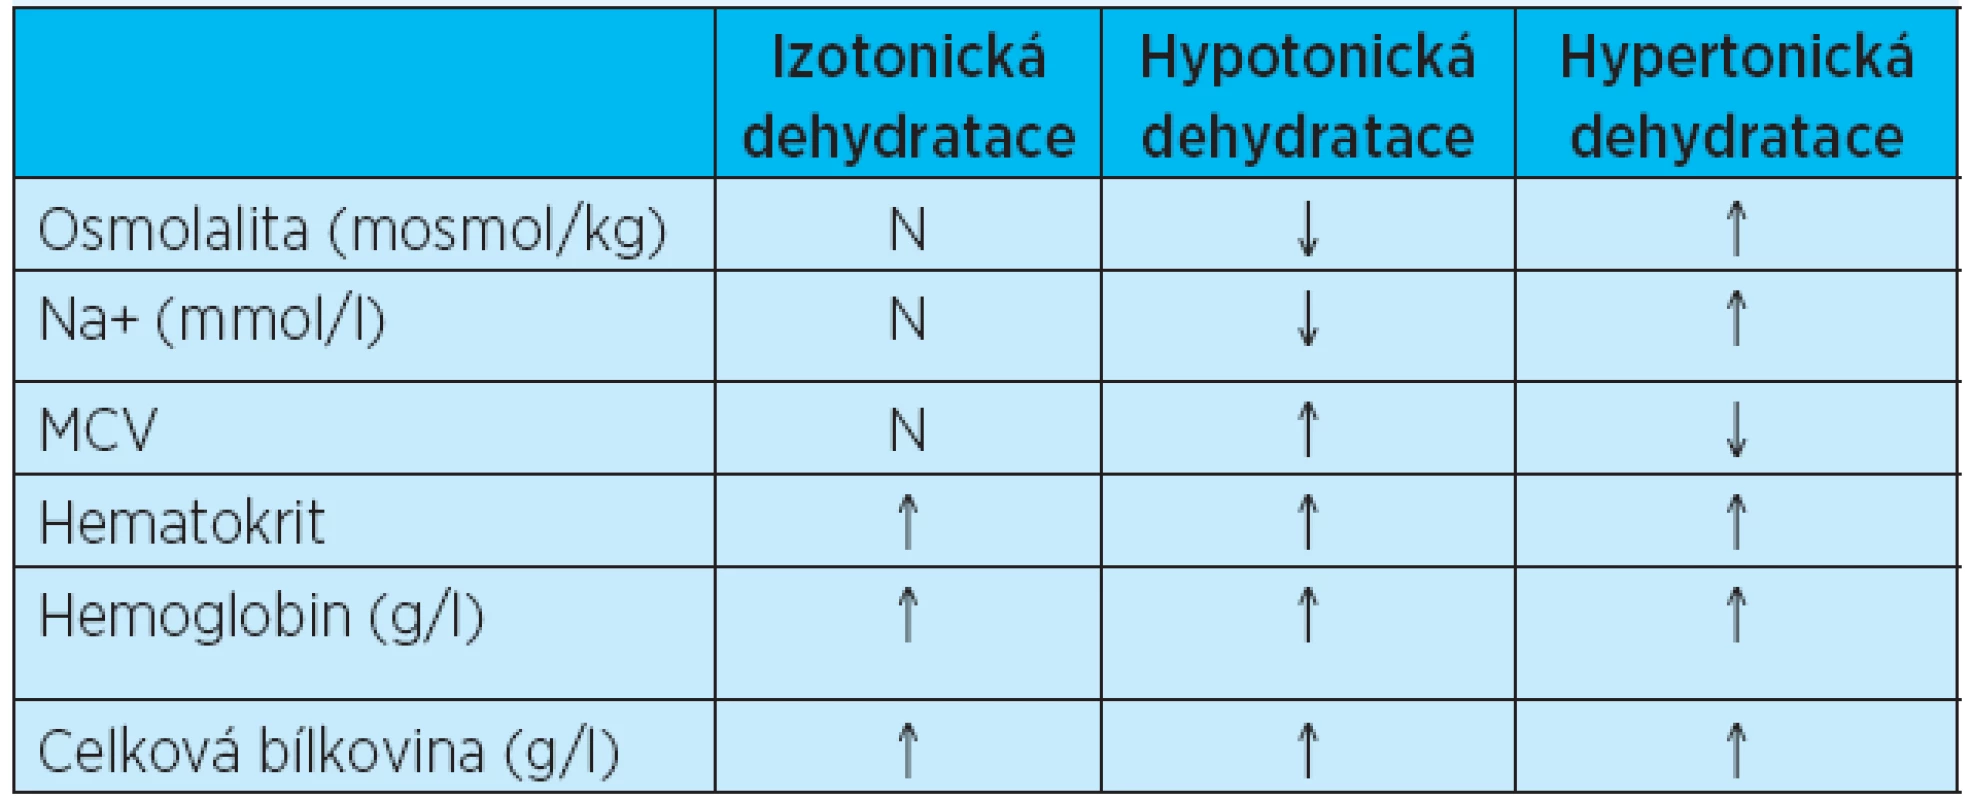 Laboratorní hodnoty vyskytující se při jednotlivých typech dehydratací